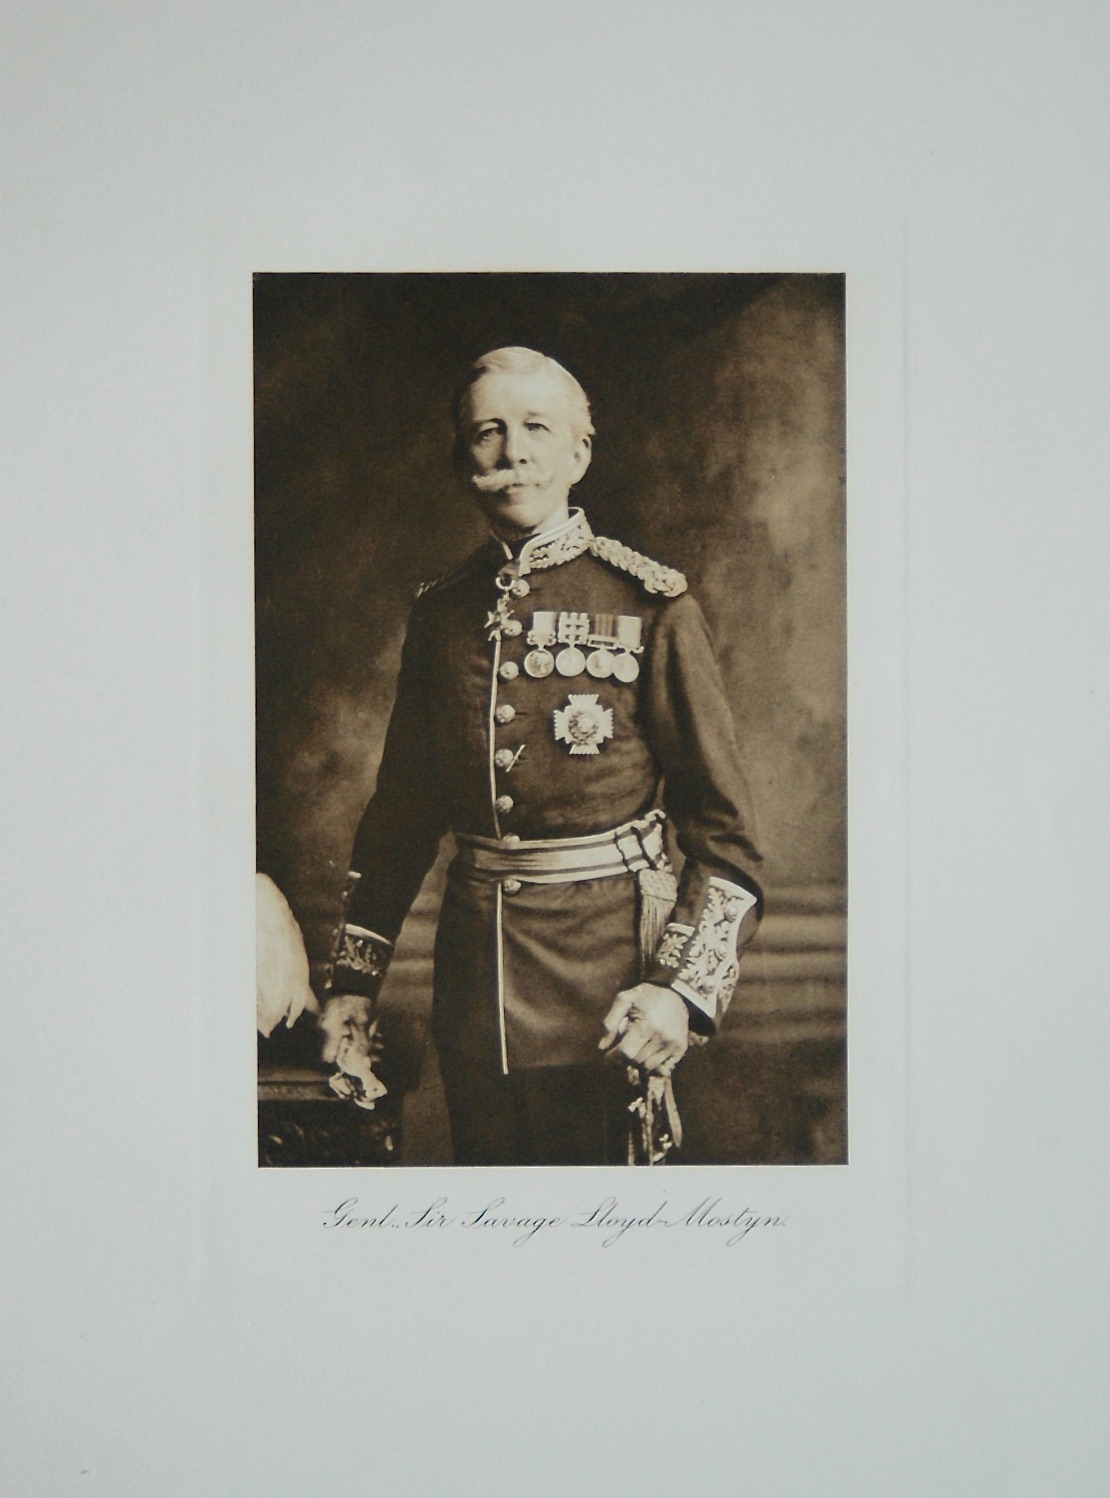 General Sir Savage Lloyd-Mostyn.